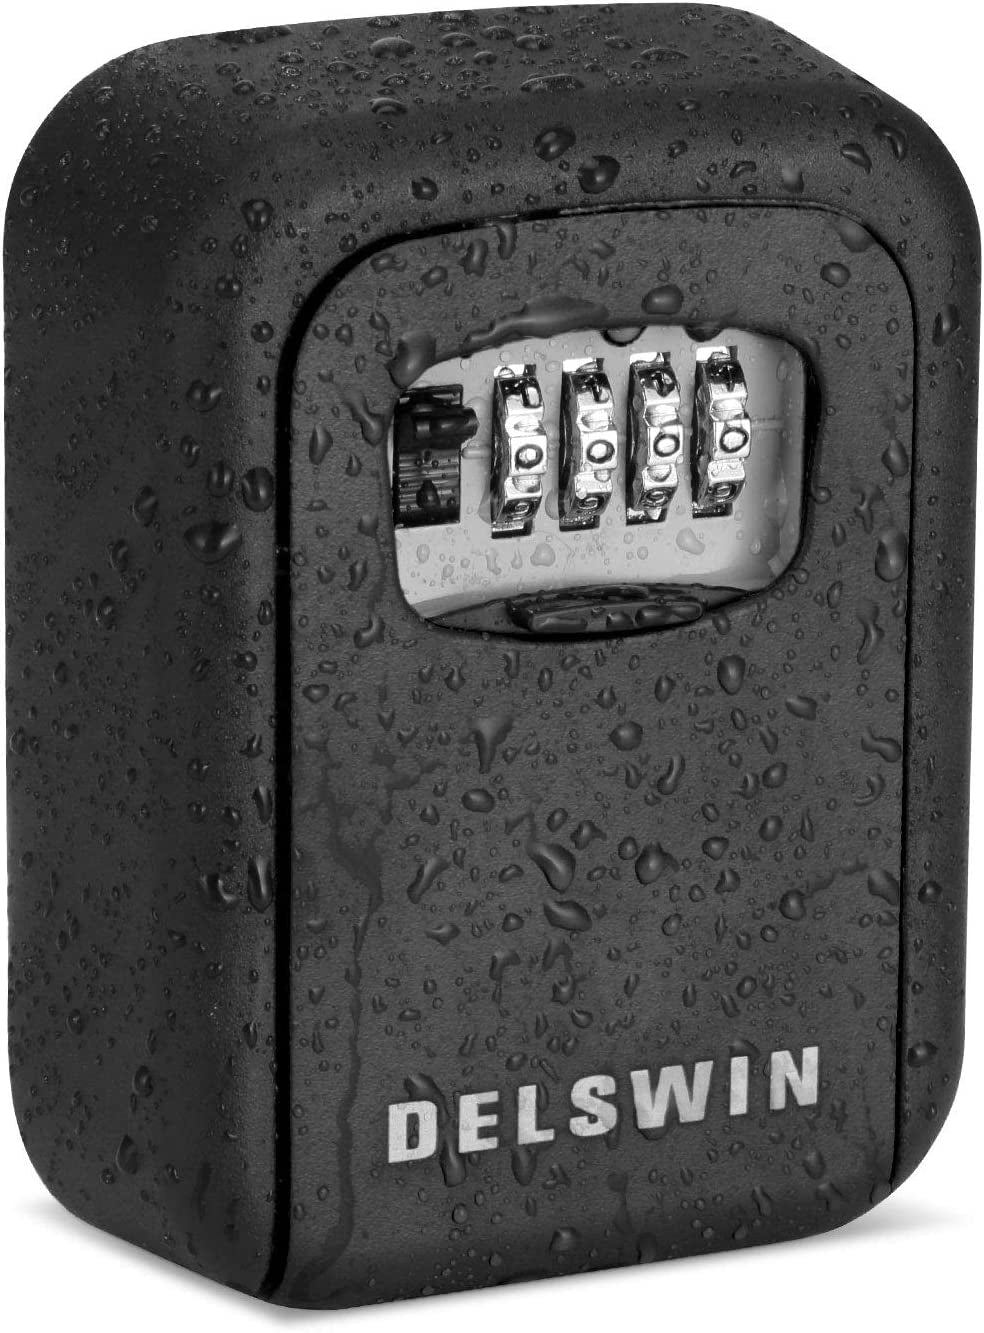 DELSWIN, Lock Box for House Key - outside Waterproof Combination Lock Box Wall Mount Metal Lockbox for Keys Outdoor,Realtors,Warehouse(Black)